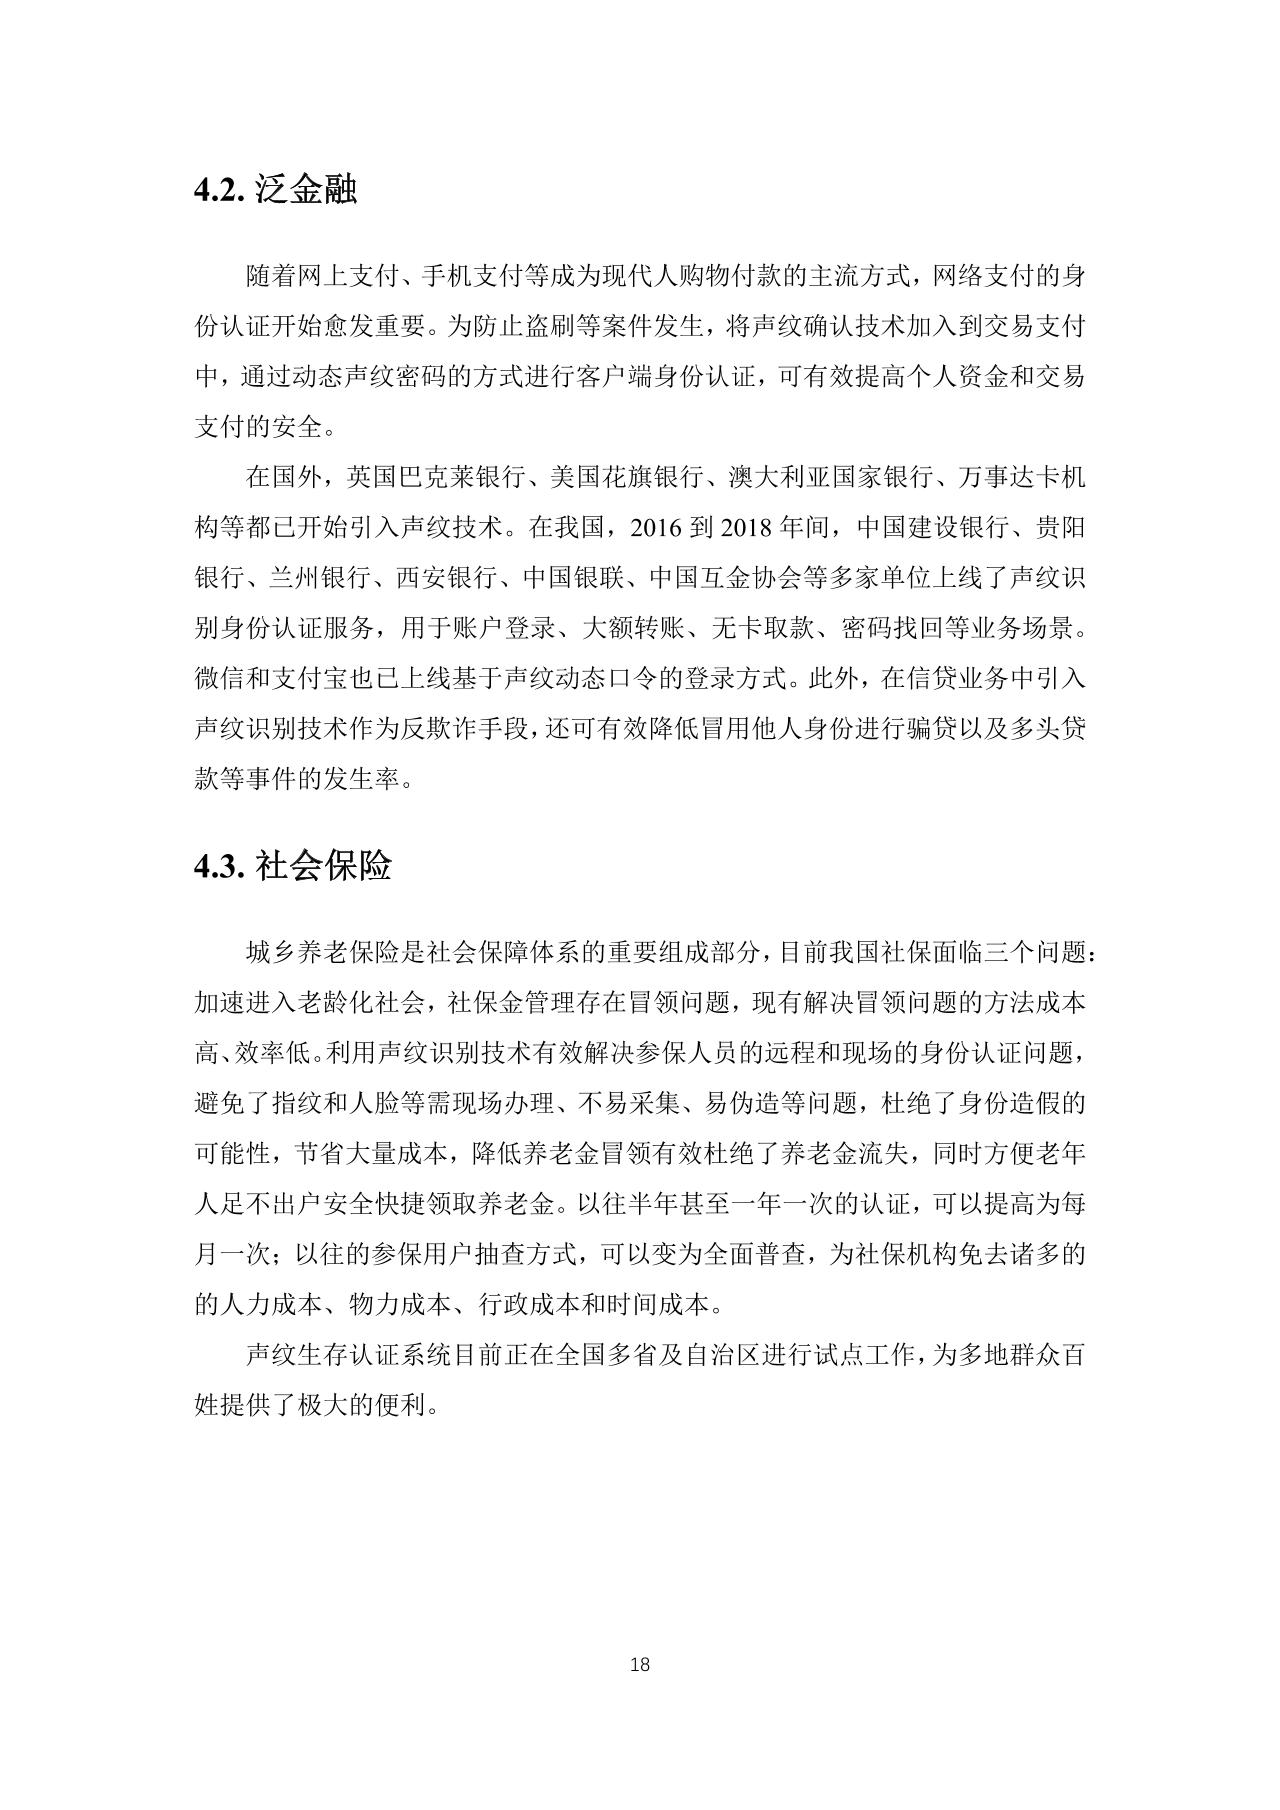 中国首份声纹识别产业发展白皮书-语音识别-undefined